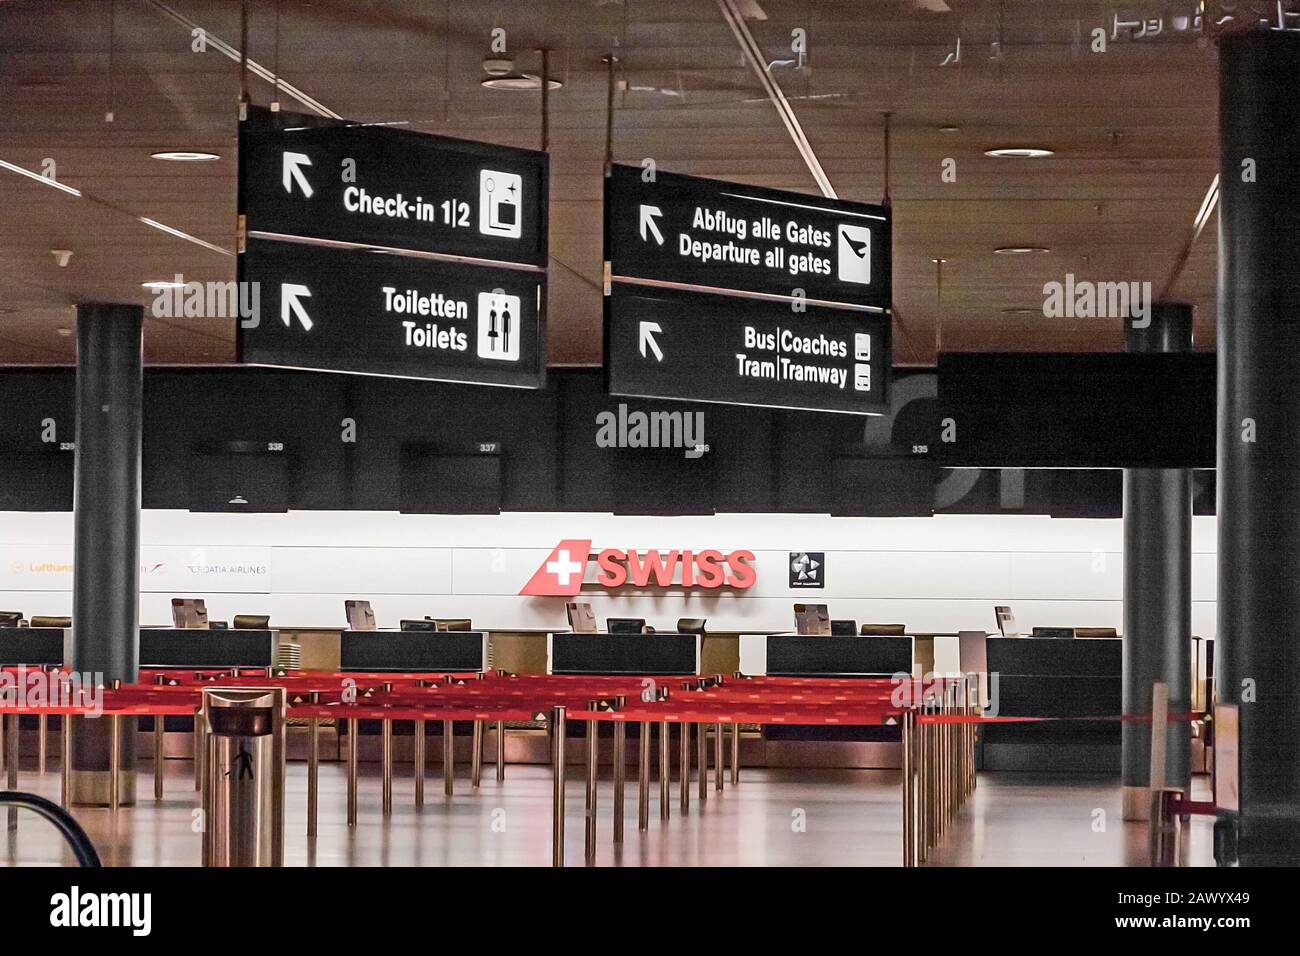 Zurich, Switzerland - June 11, 2017: Zurich airport, Check-in desk 3, sign to departure gates, tram, toilets Stock Photo